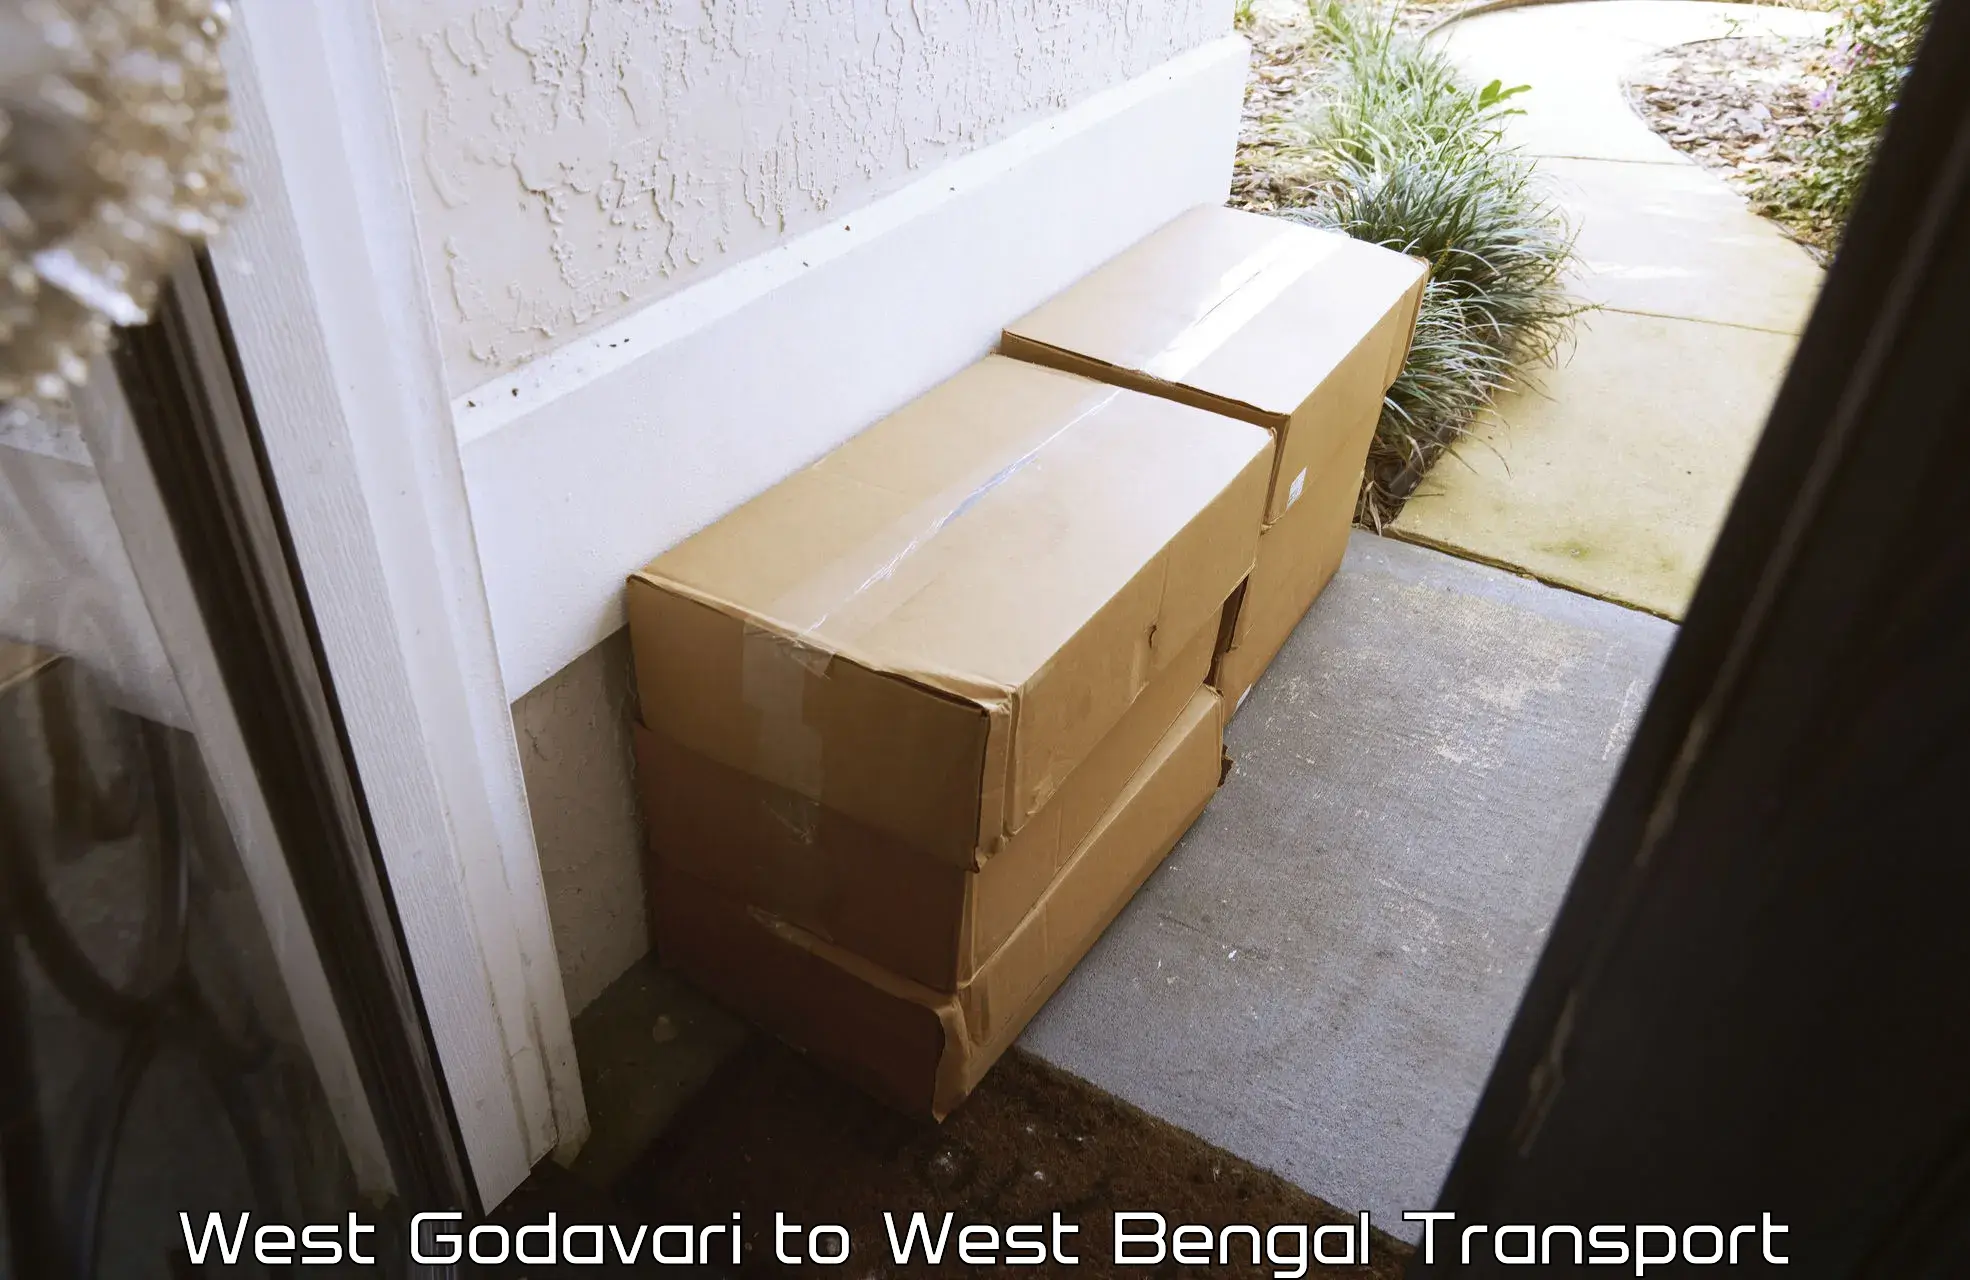 Vehicle parcel service West Godavari to Maynaguri